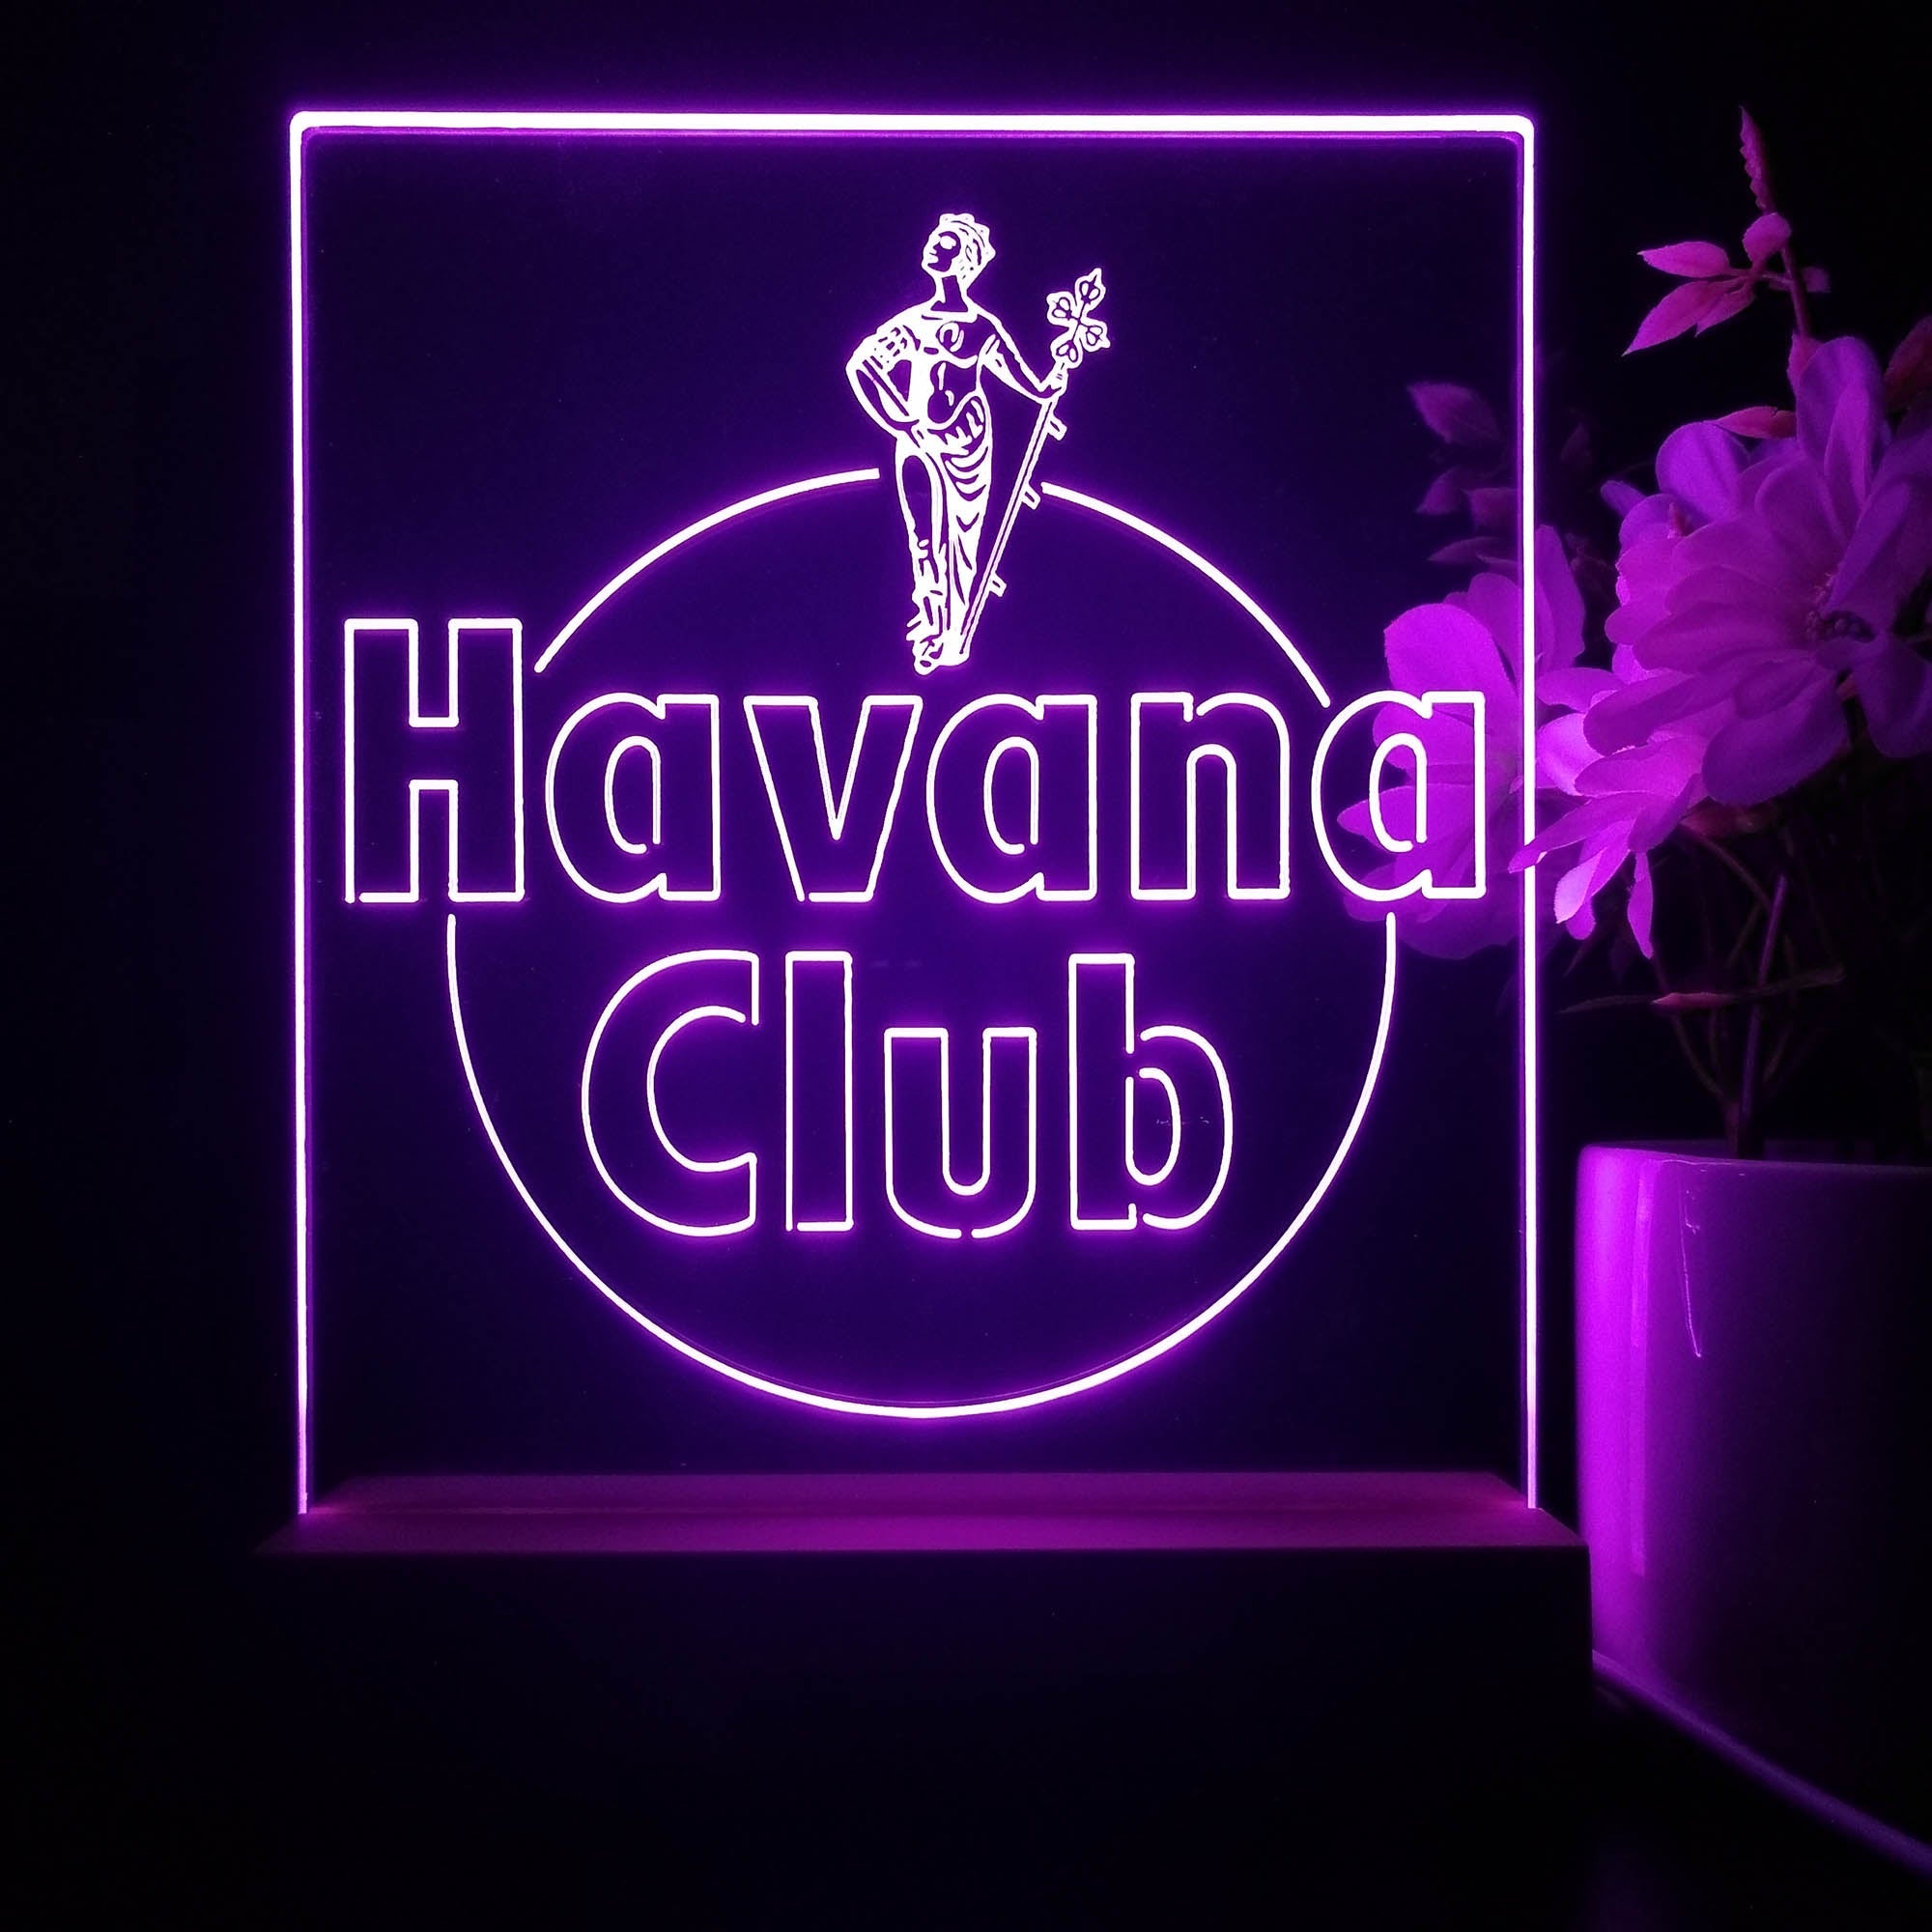 Havanas Club Beer Bar 3D Illusion Night Light Desk Lamp